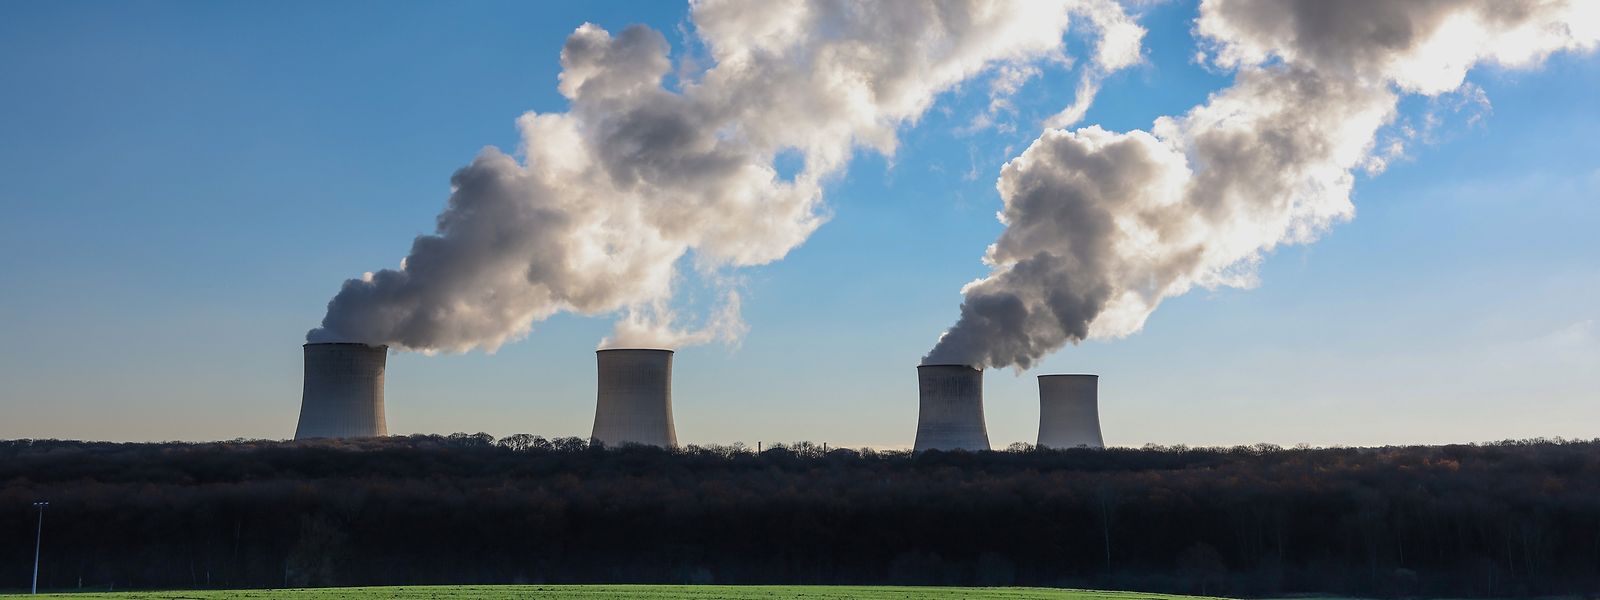 Atomenergie kann weitgehend CO2-frei produziert werden - dafür birgt sie andere Risiken.